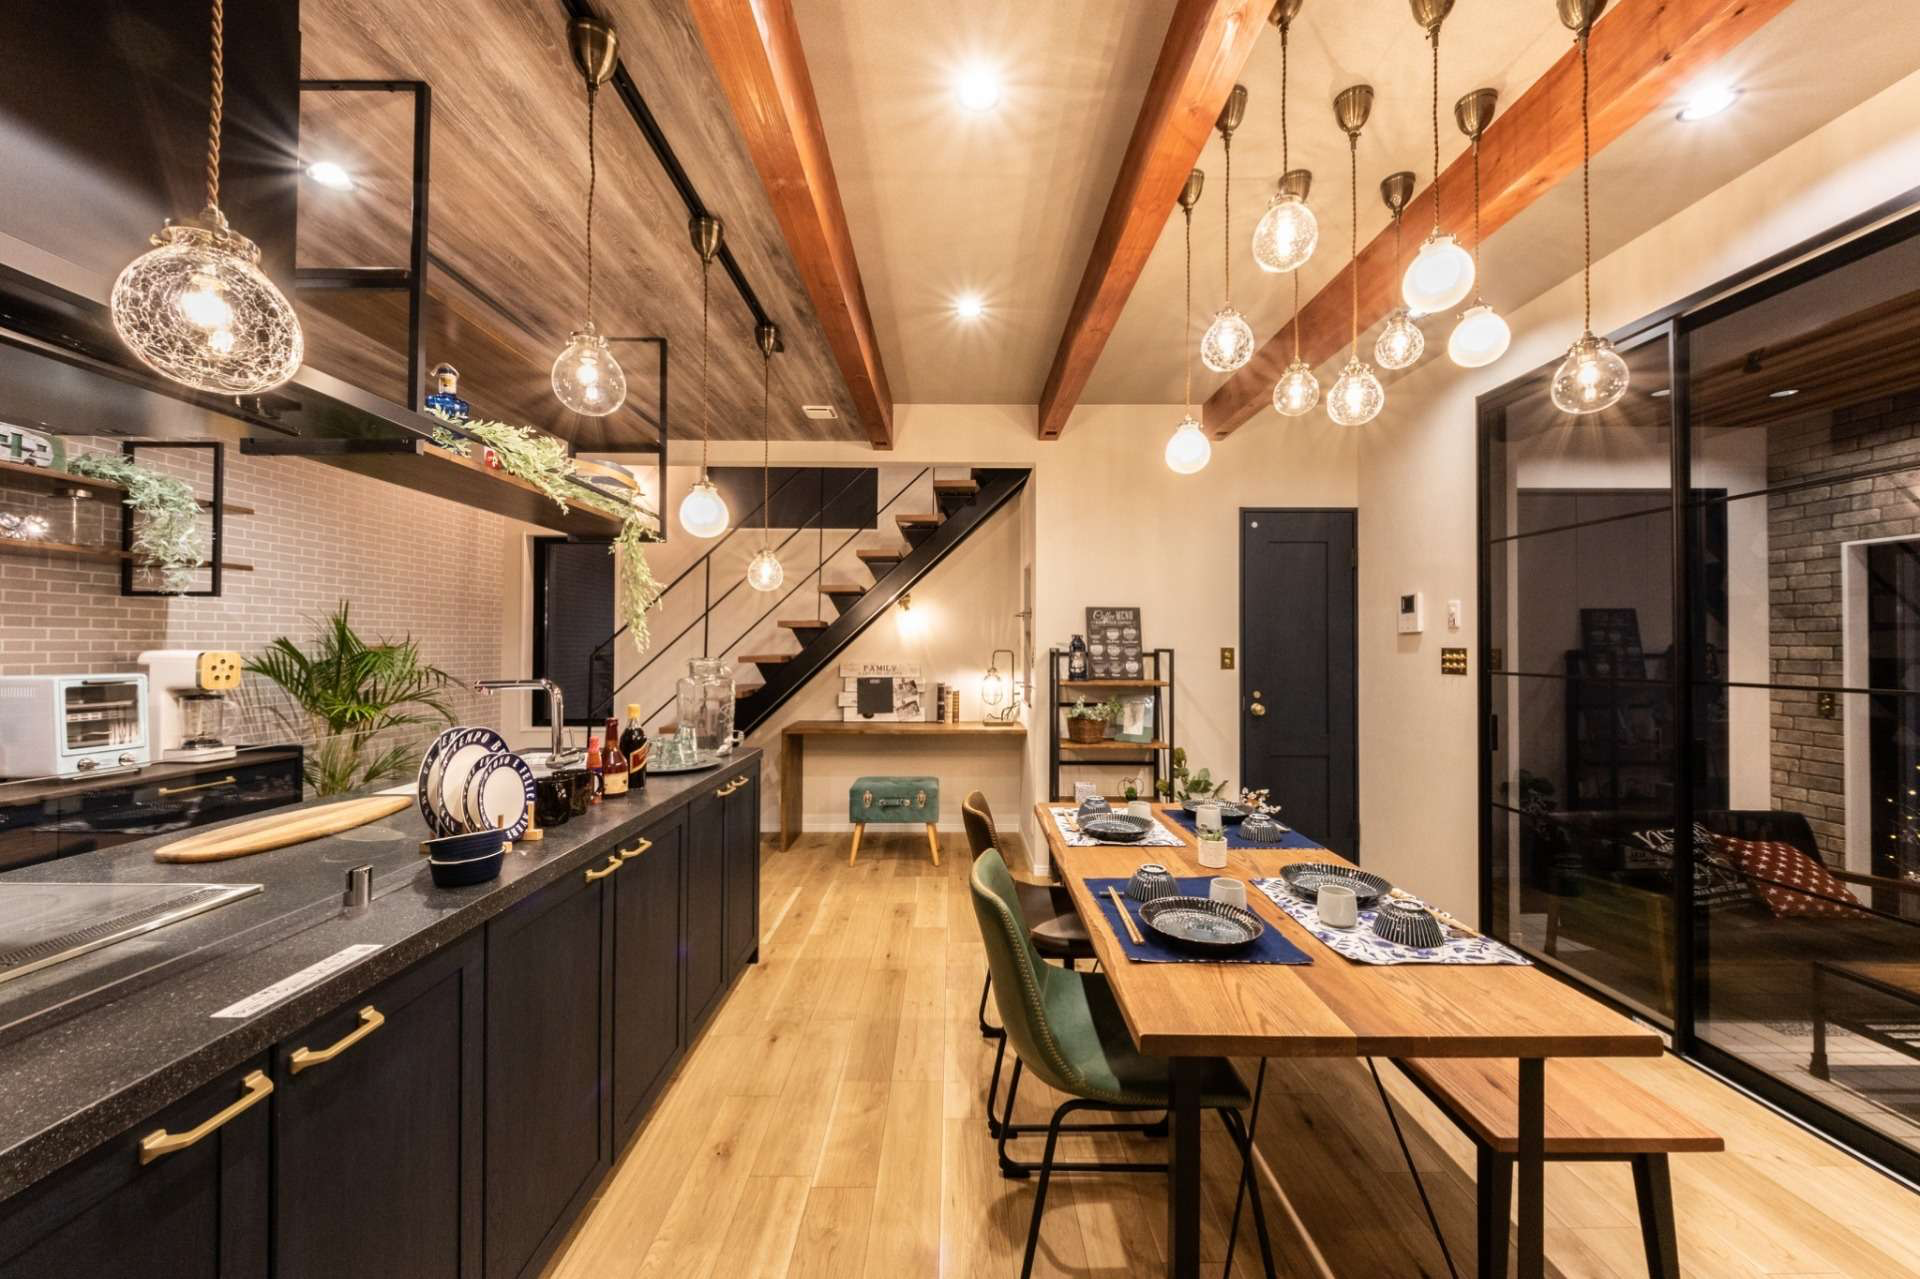 【“Lクラス”を採用したアイランド型キッチンで開放感のある食卓🍳】宮崎市で新築・リノベーション | mikiデザインハウス